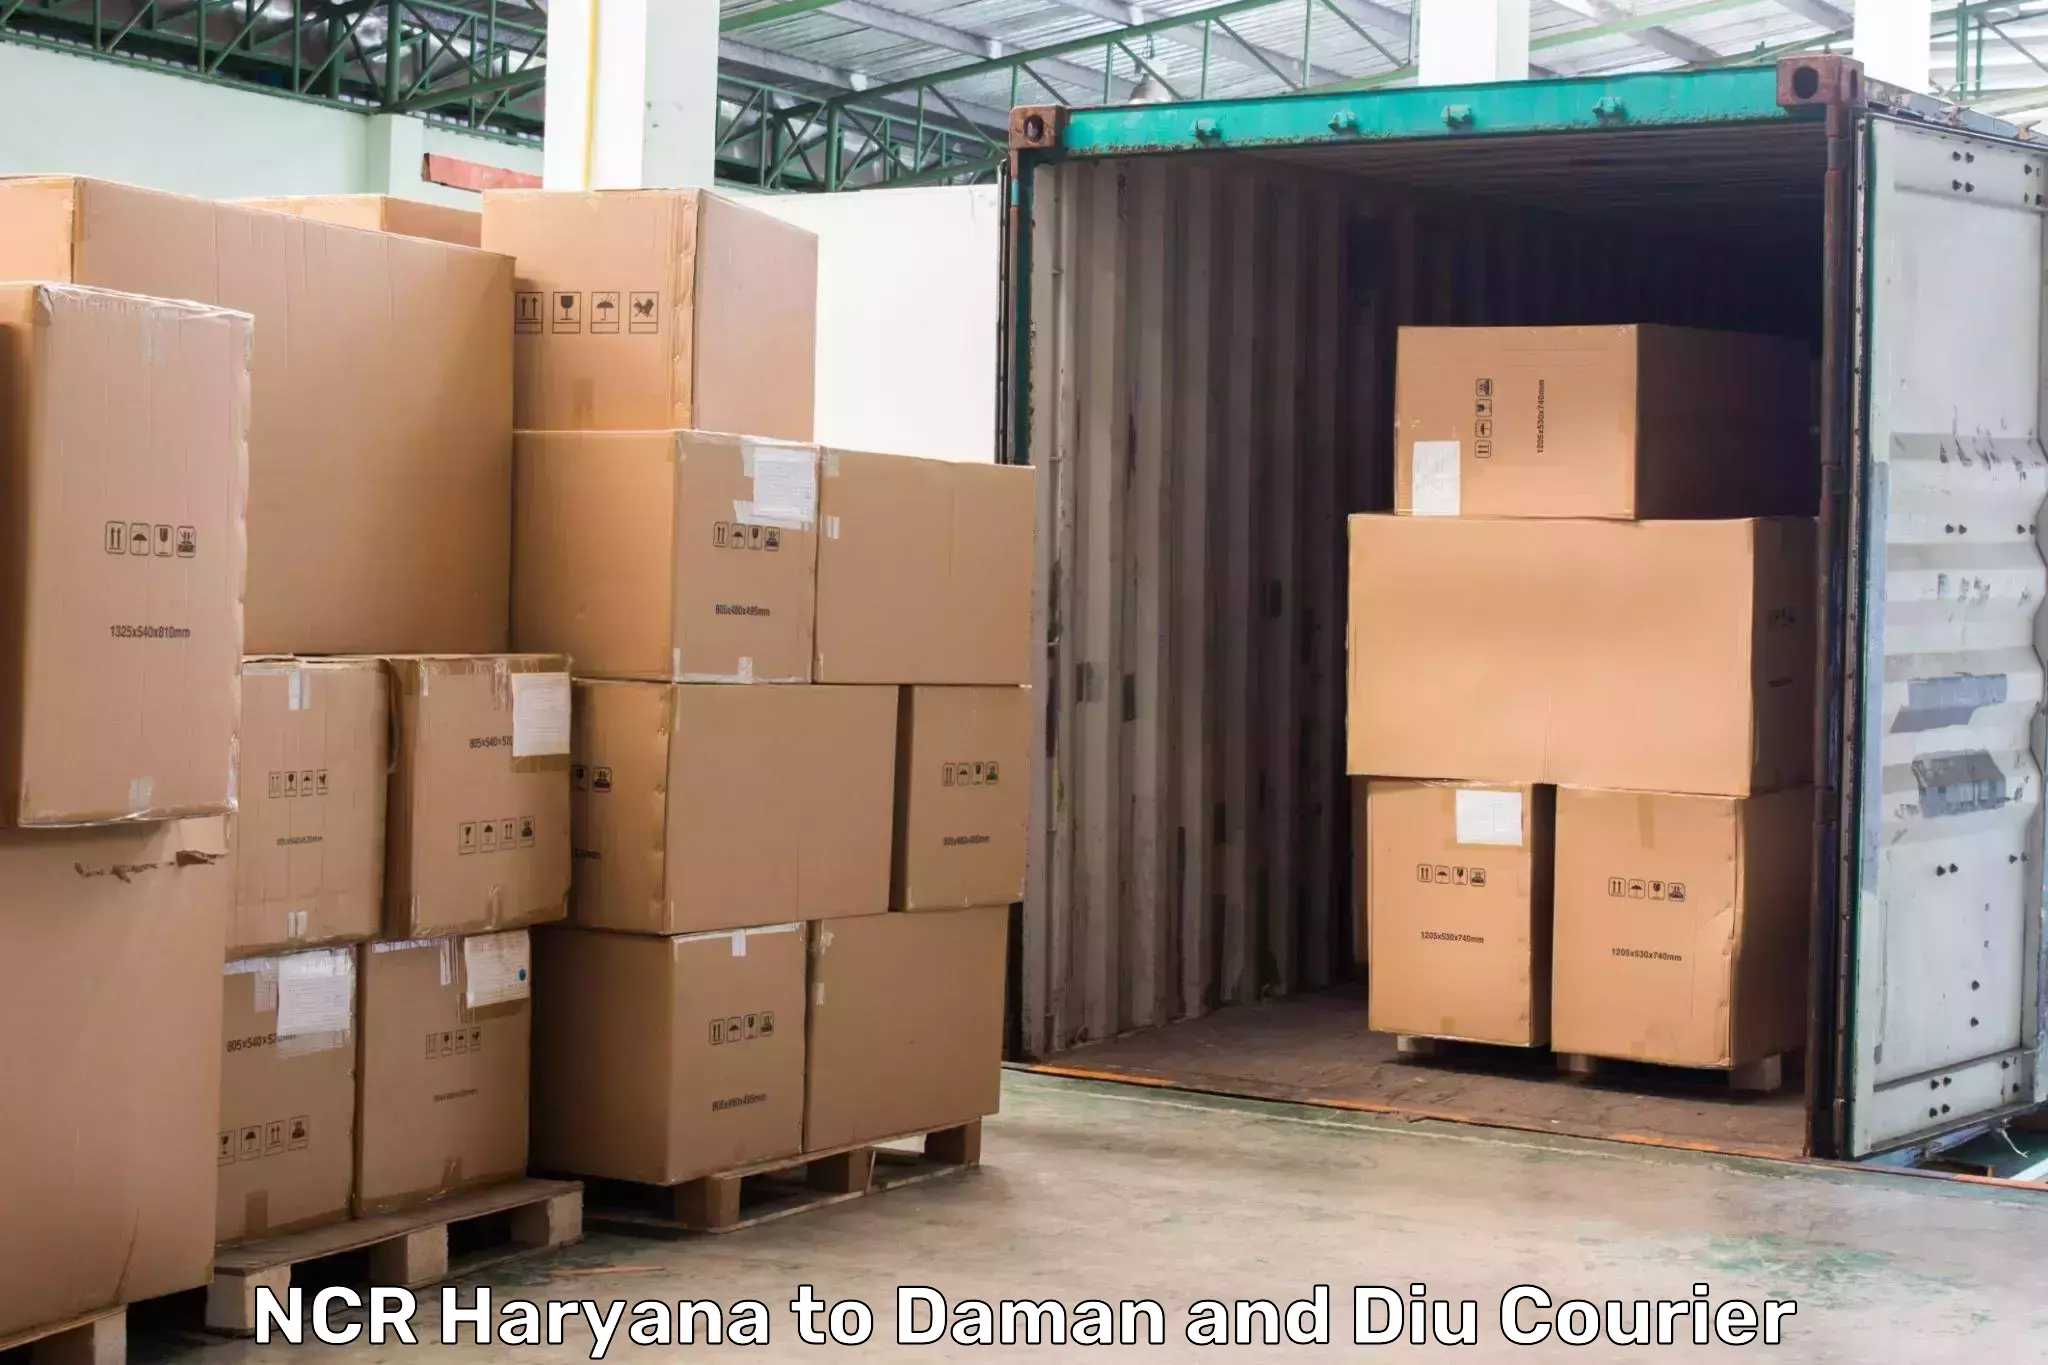 Cargo courier service NCR Haryana to Daman